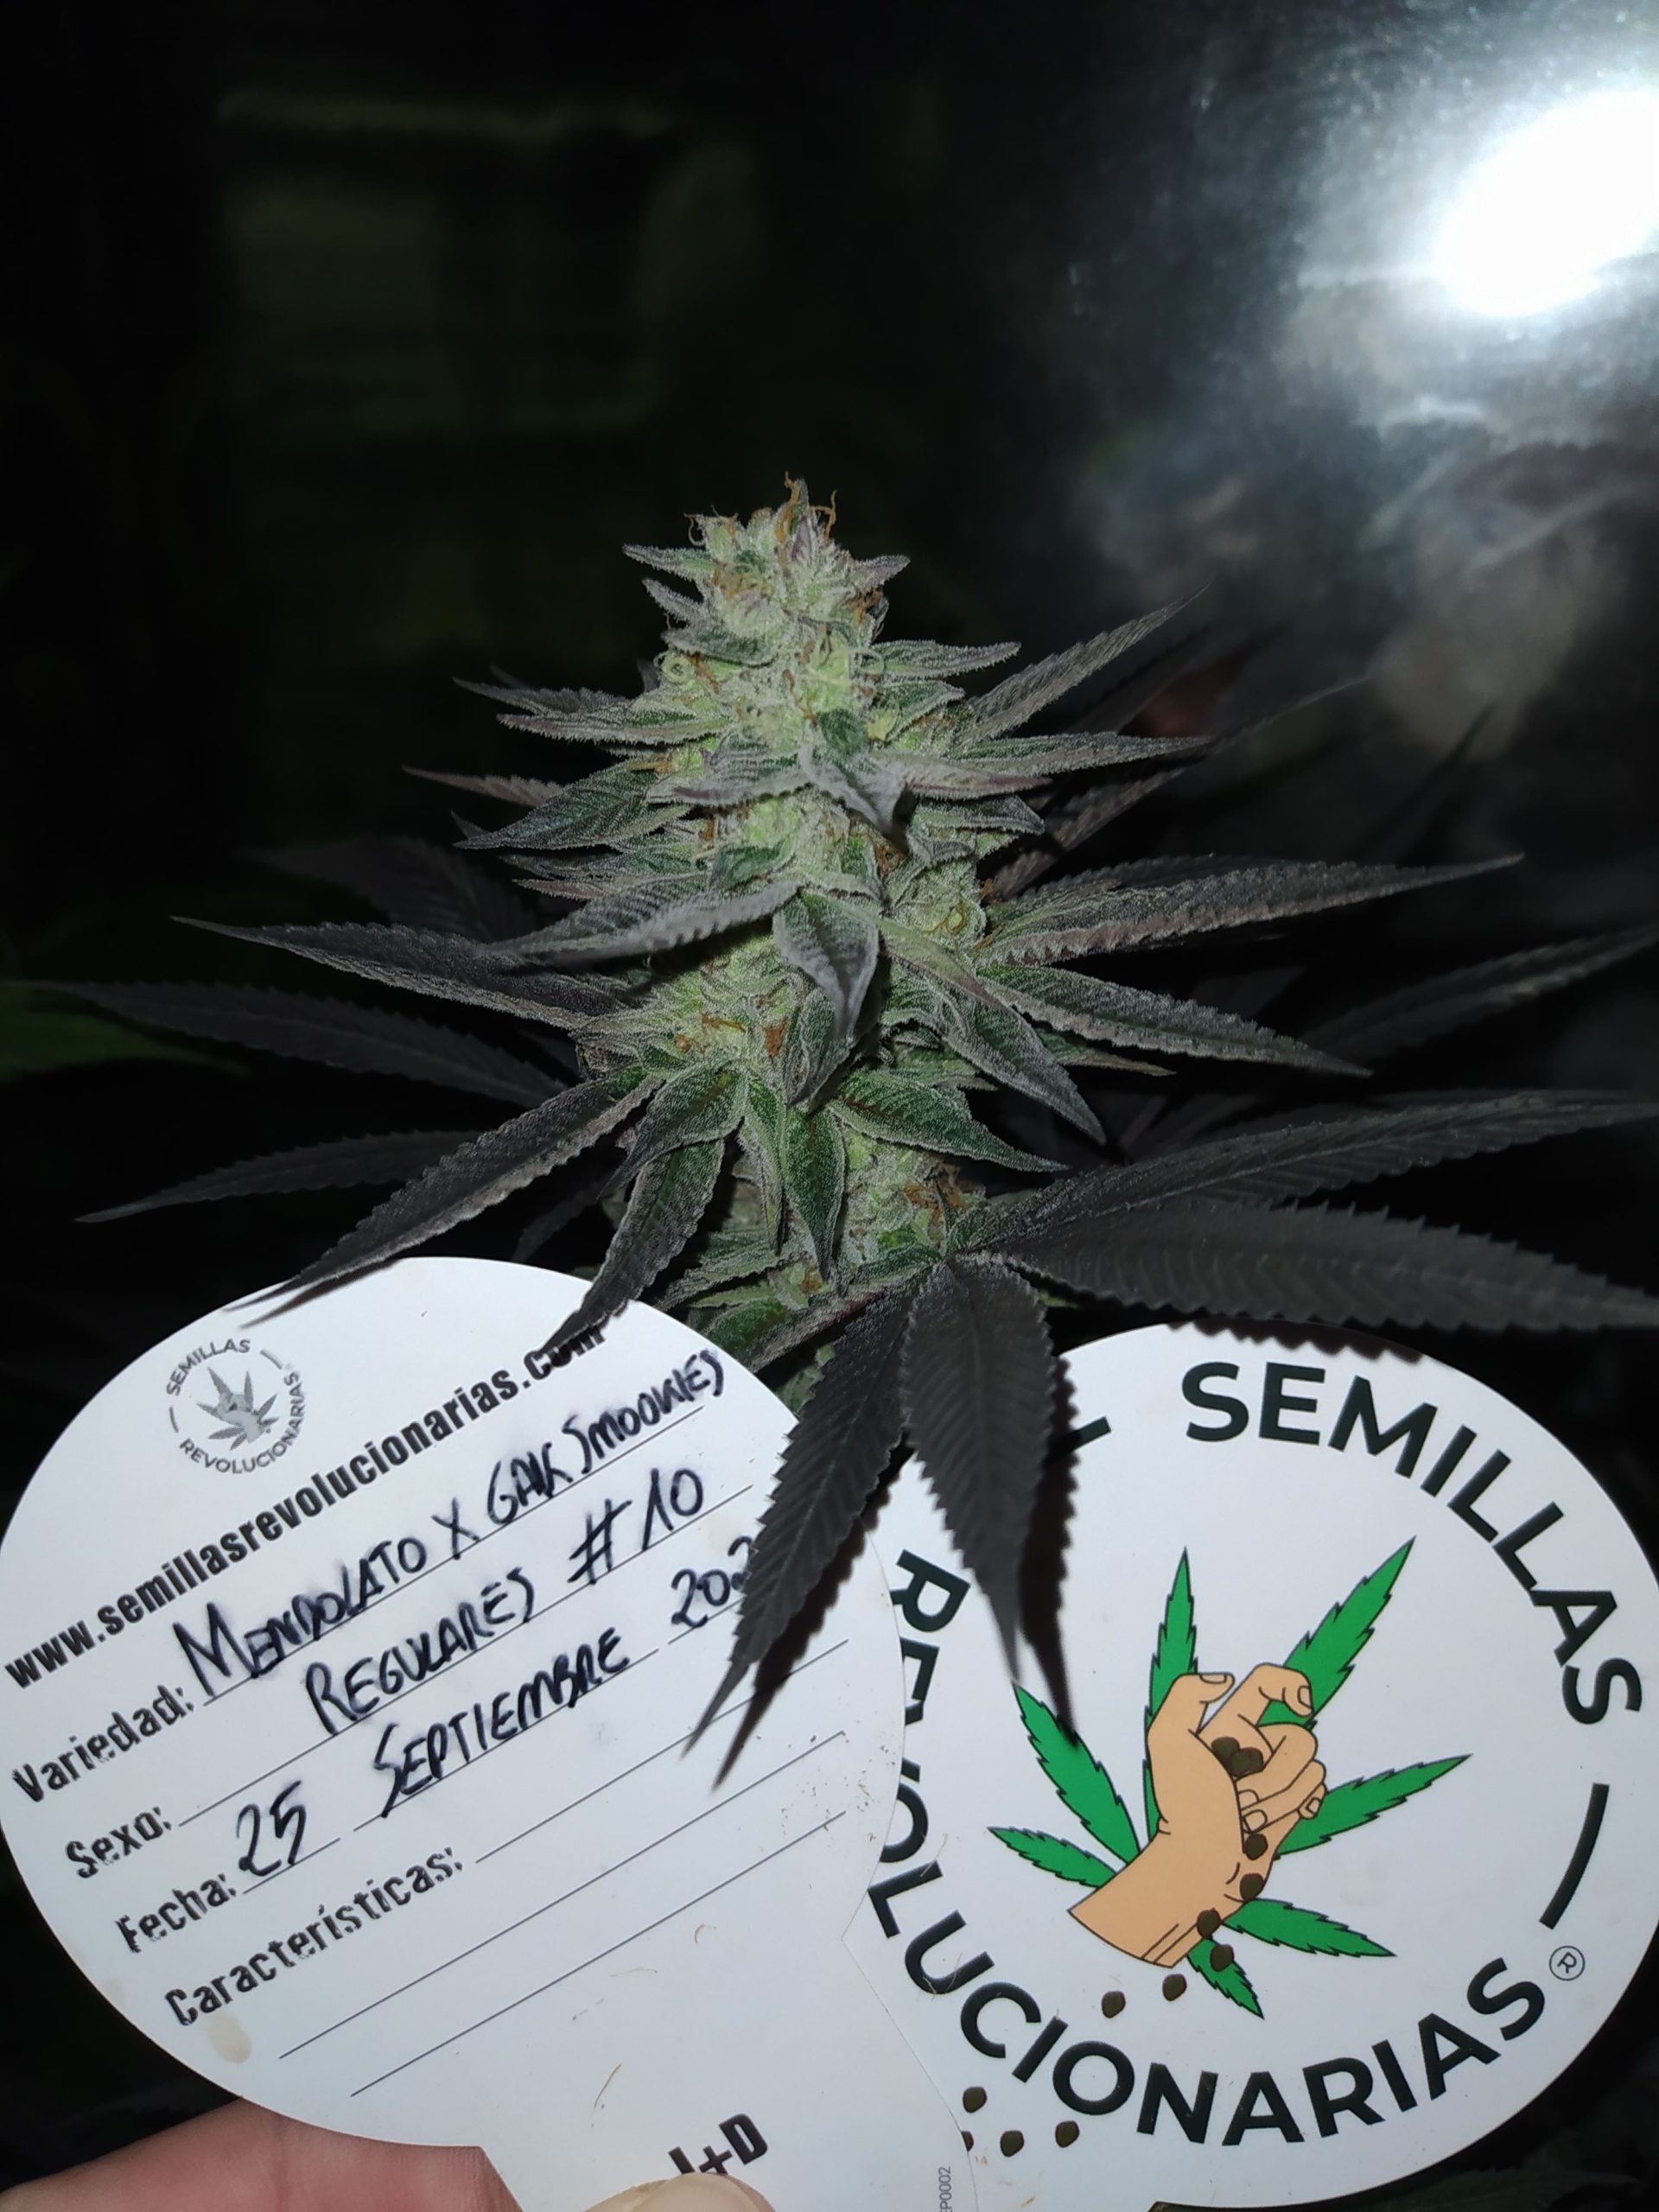 Semillas de marihuana americanas - Mendolato x Gak Smookies